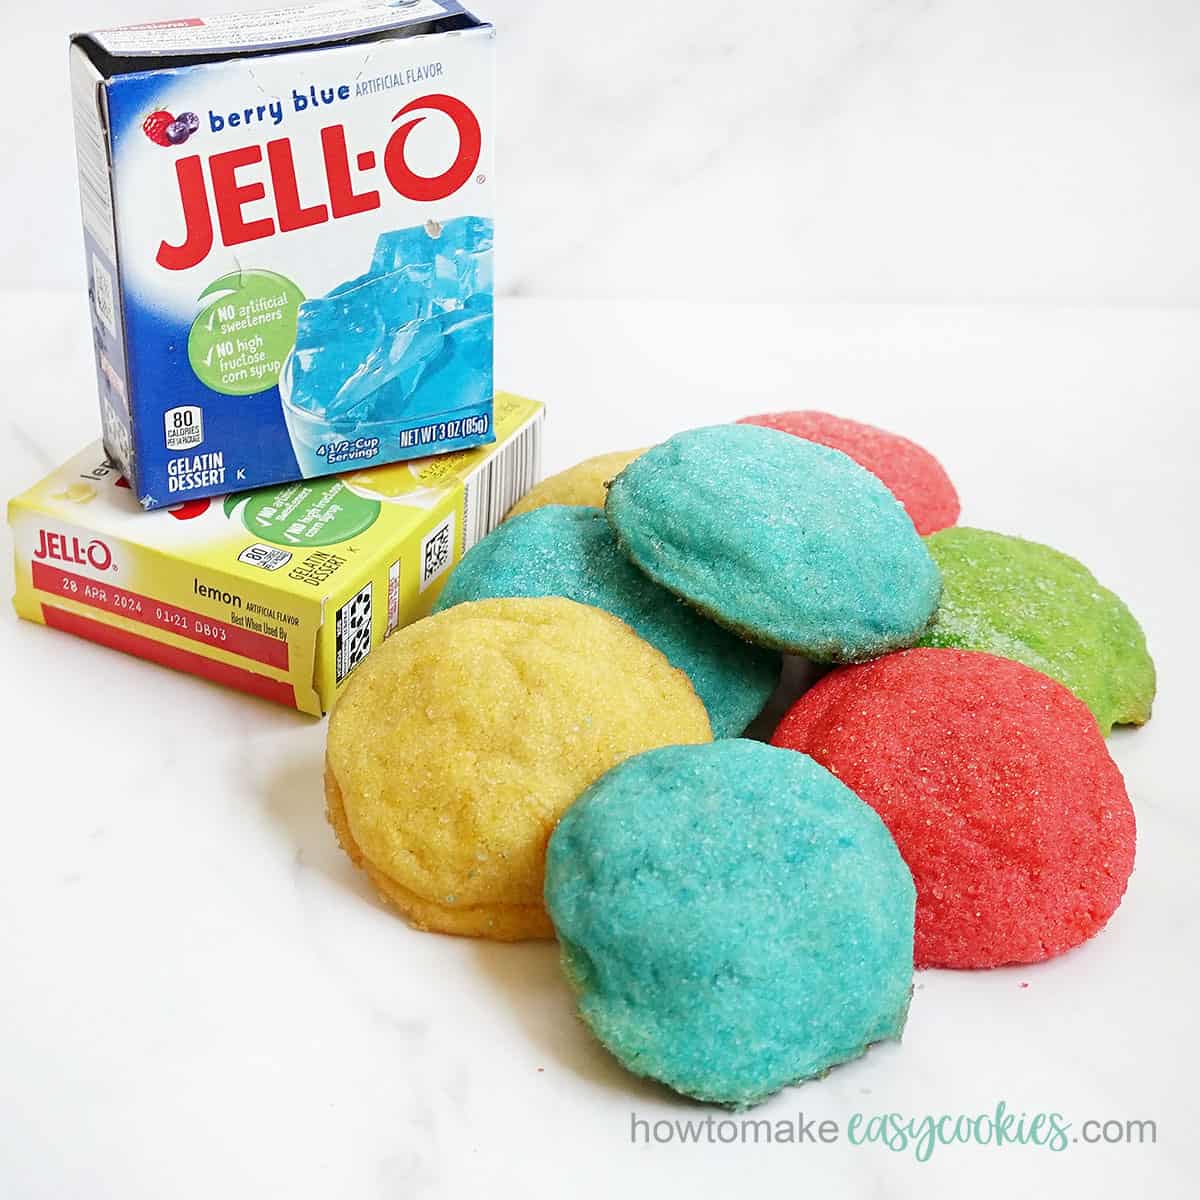 box of Jello with rainbow cookies